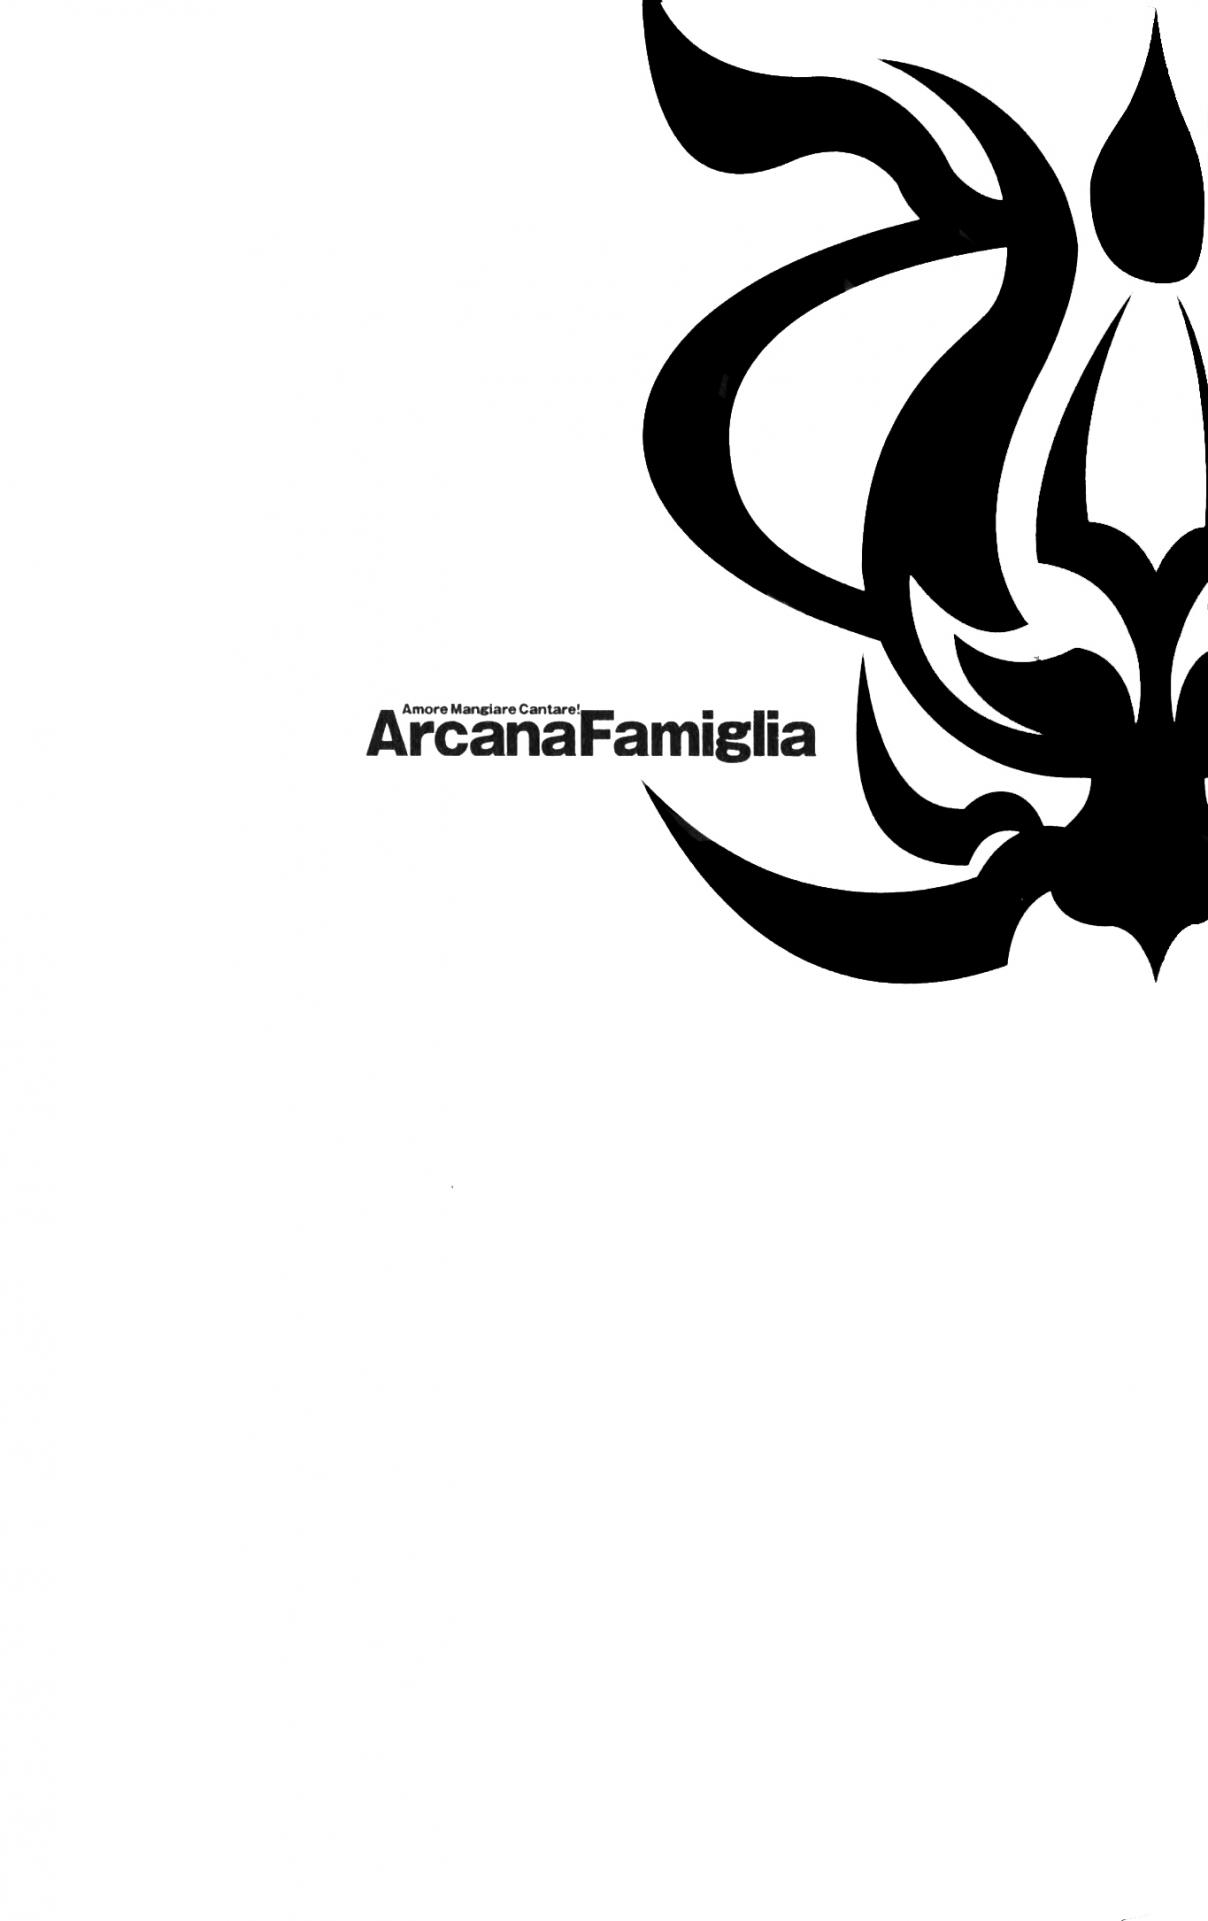 Arcana Famiglia Amore Mangiare Cantare! Vol. 3 Ch. 19.5 Voyage